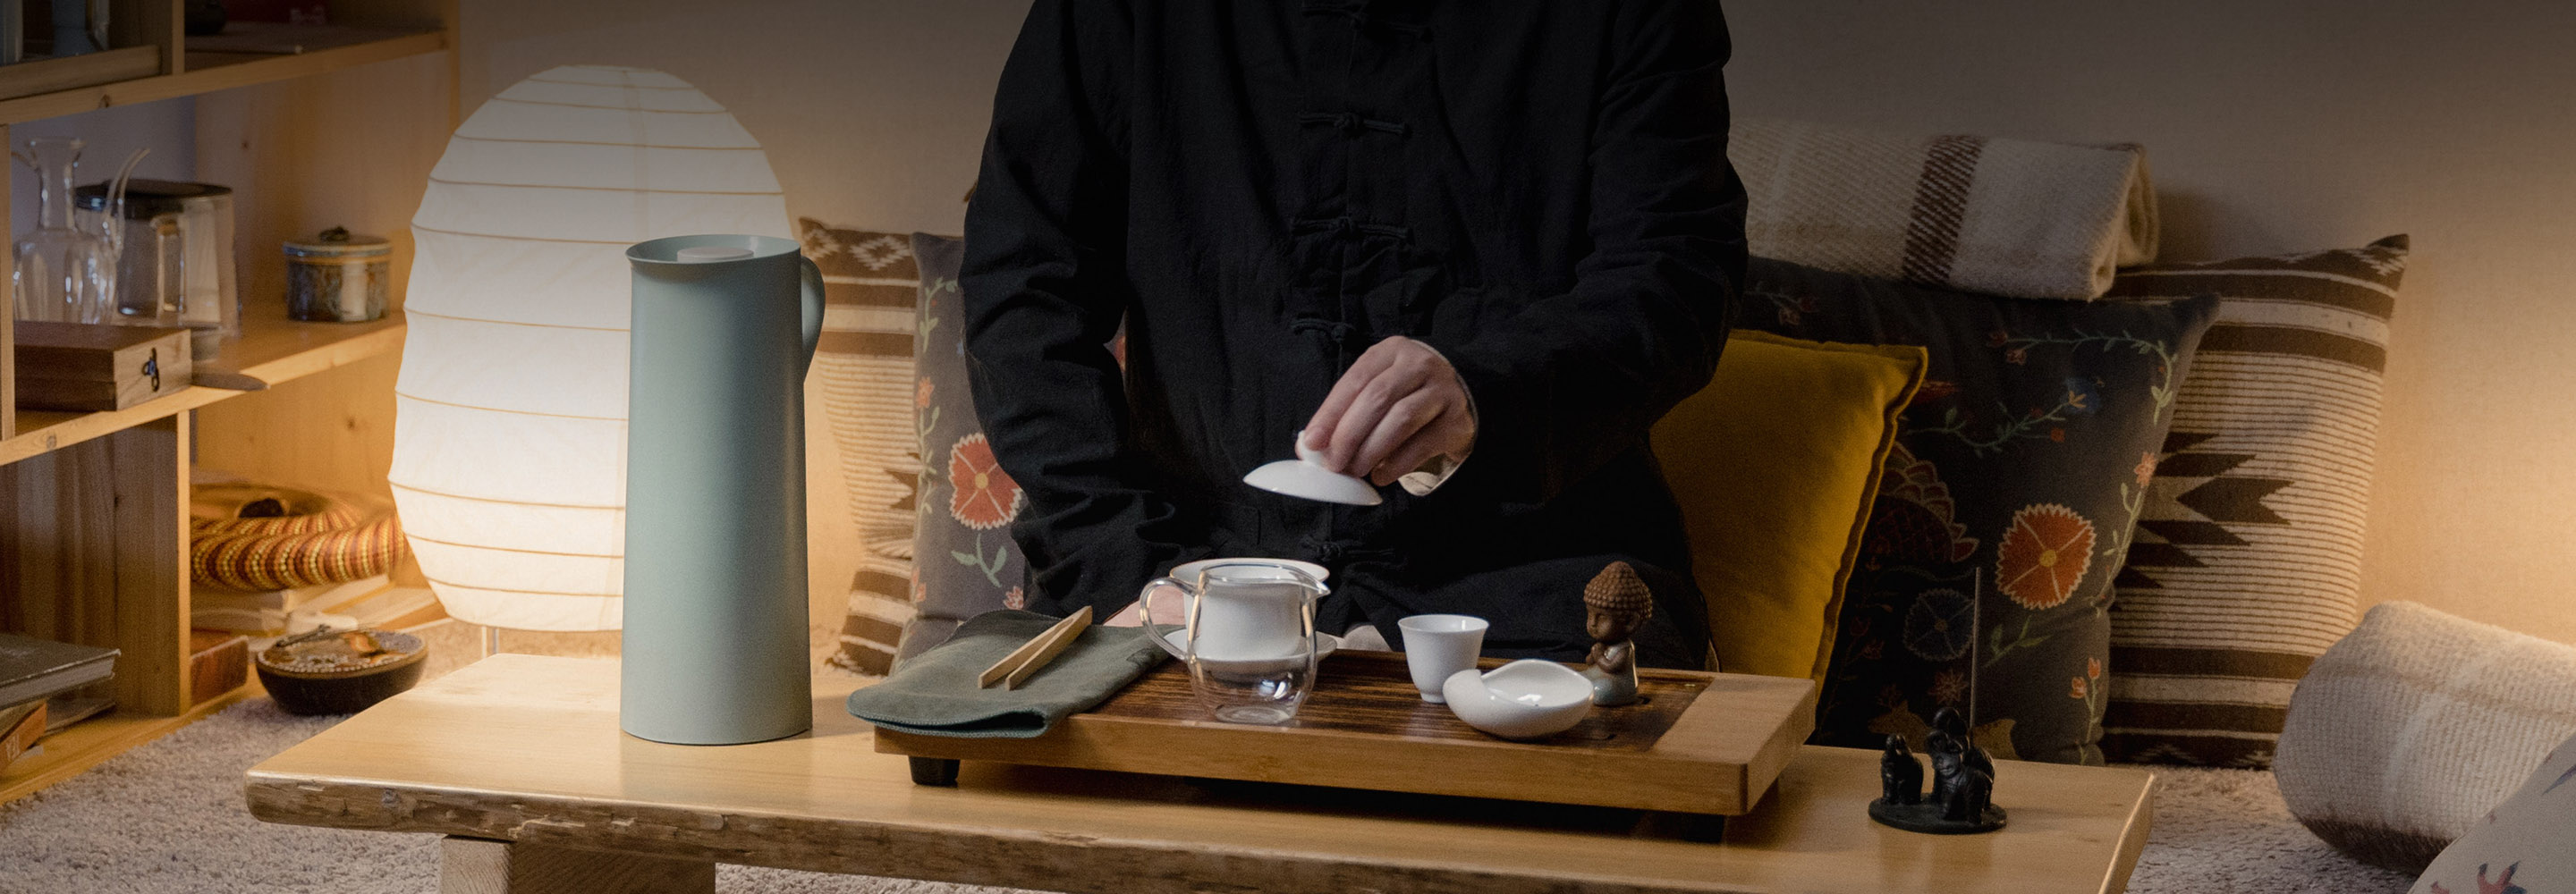 Редкие сорта чая и сопровождение мастера: куда сходить на чайную церемонию в Москве